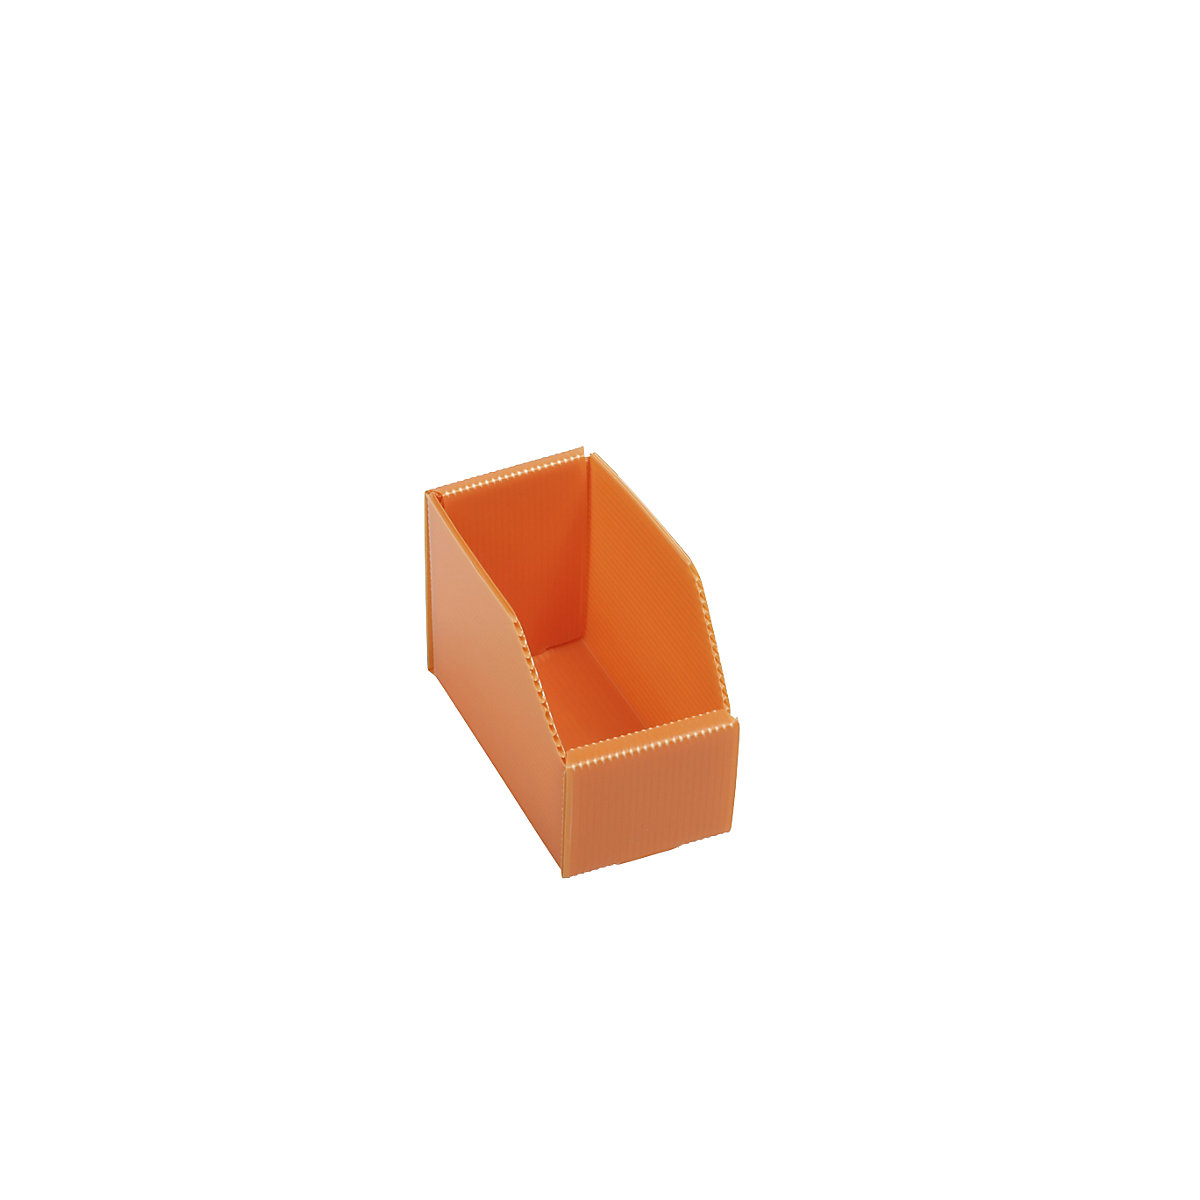 Kunststof stellingbak, vouwbaar, l x b x h = 150 x 75 x 100 mm, oranje, VE = 25 st.-3